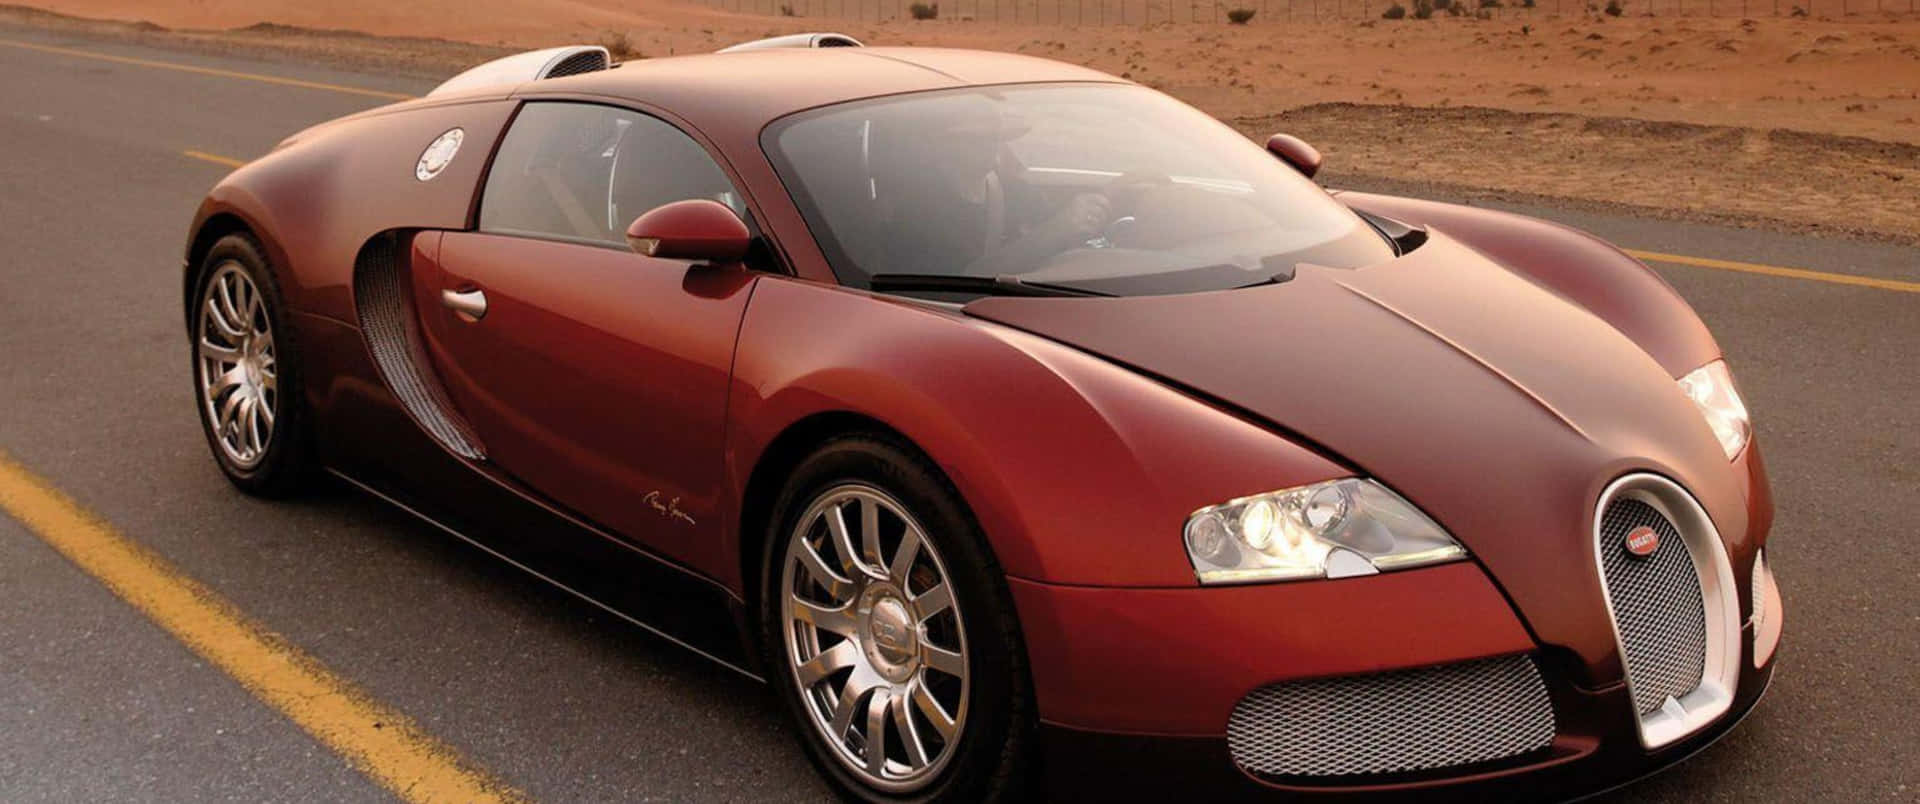 3440x1440p Bugatti Bakgrund 3440 X 1440